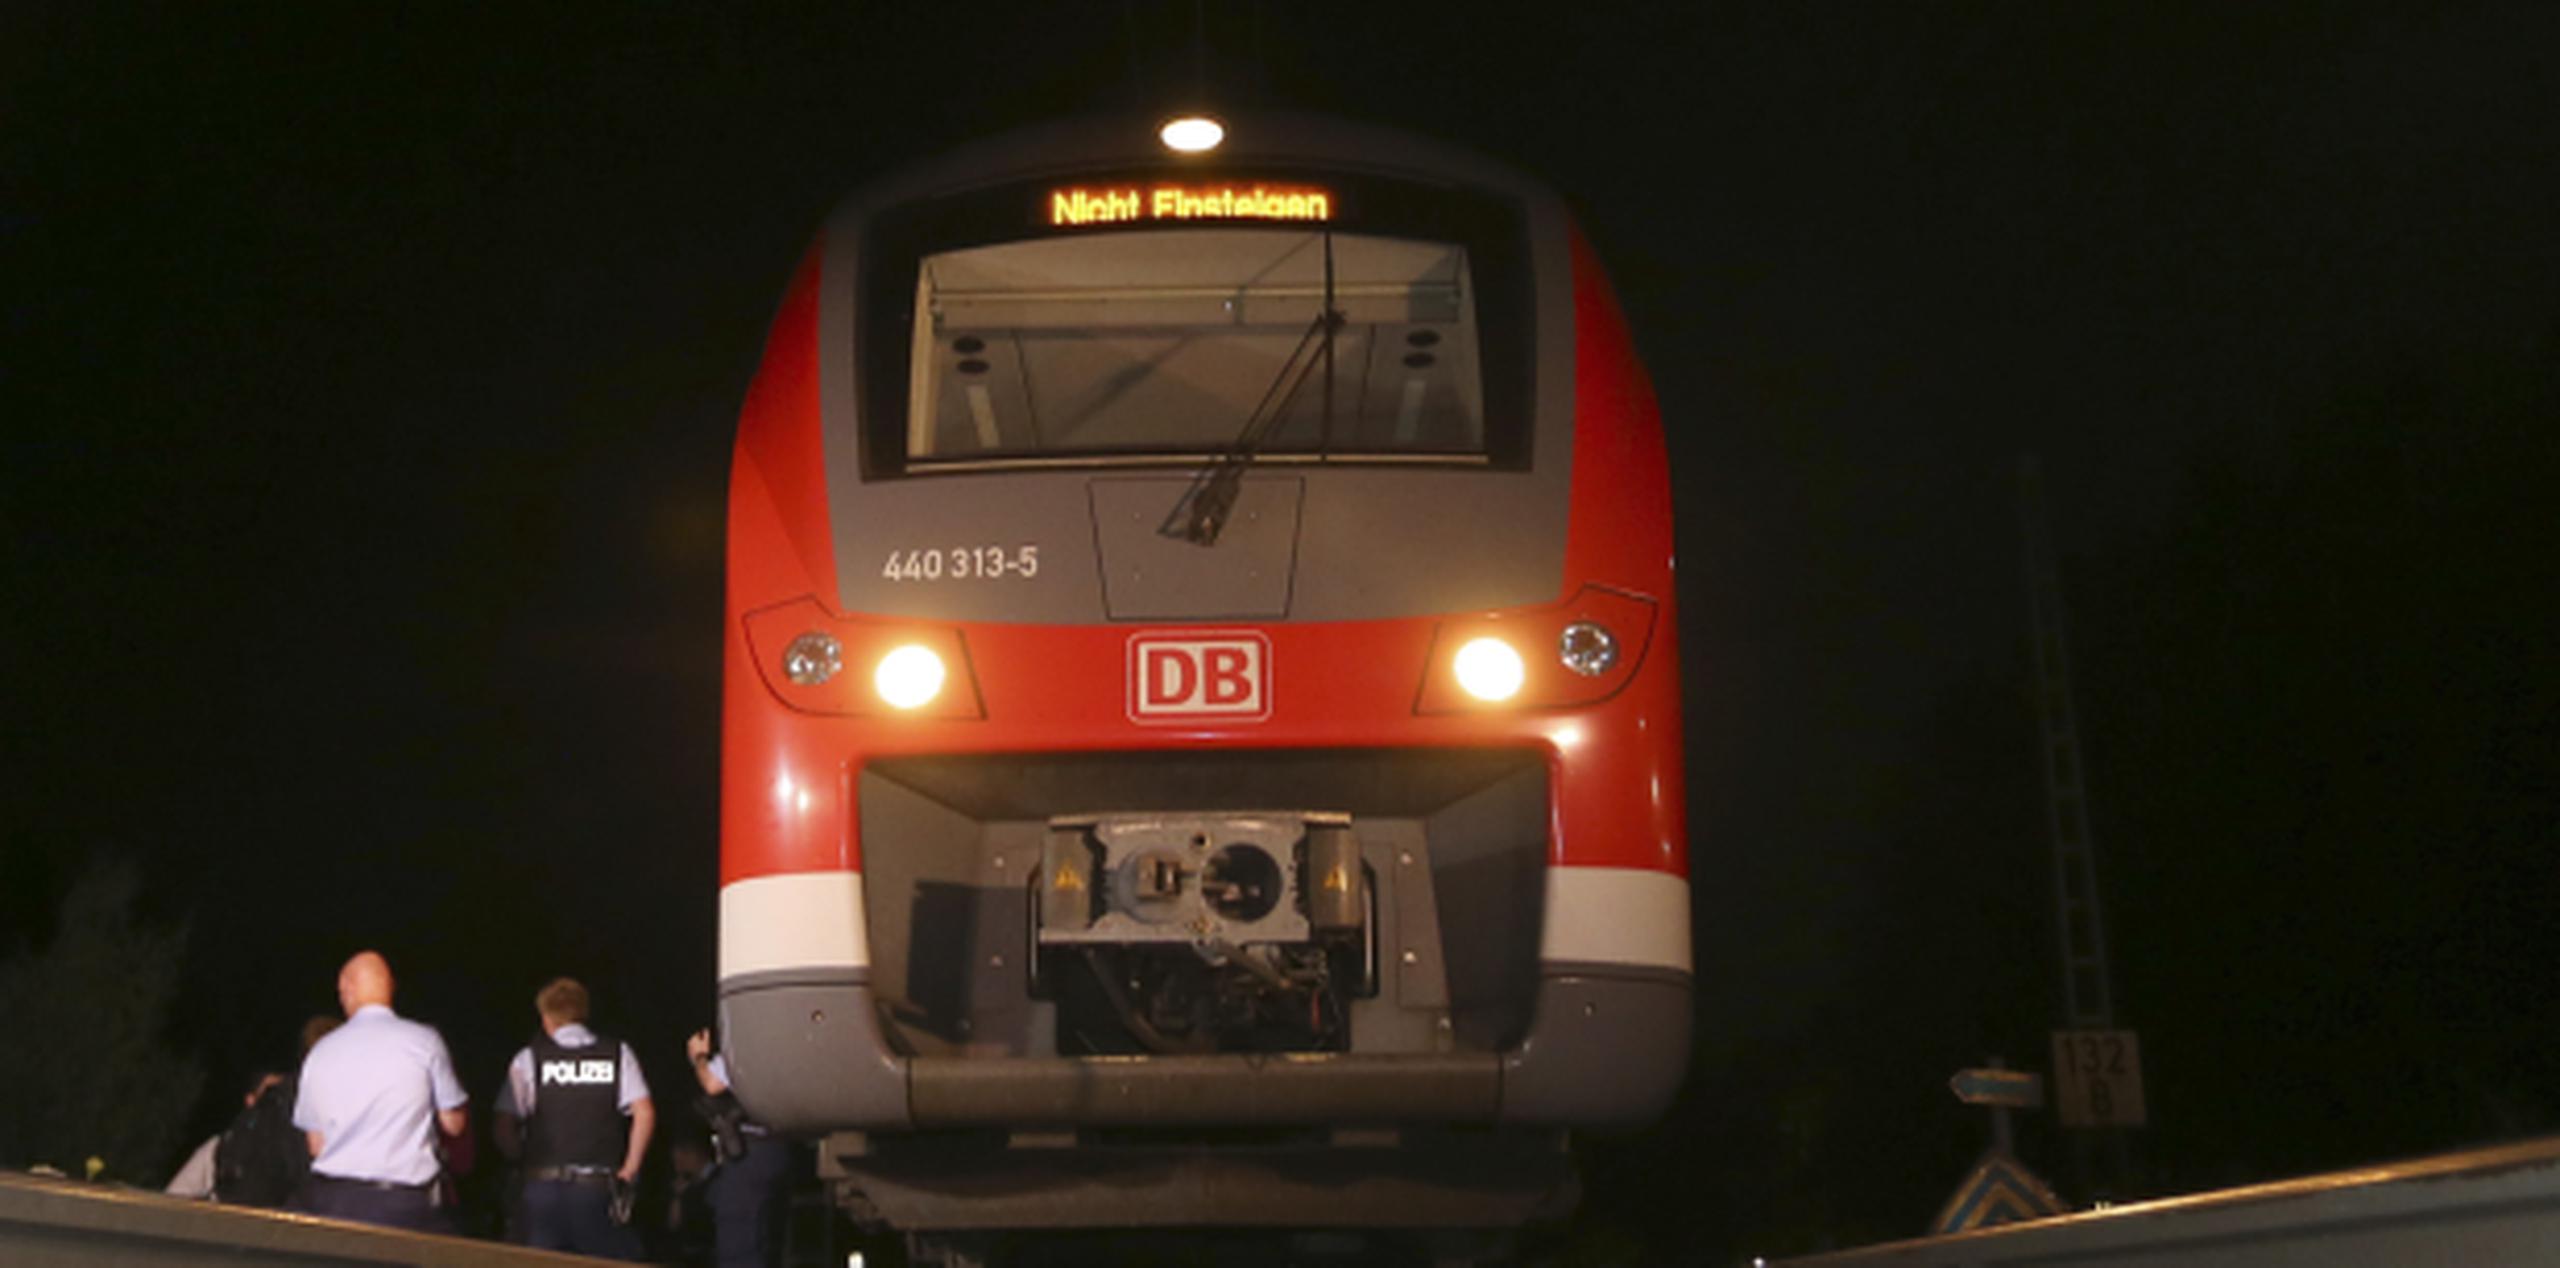 Mohamed Riad atacó a los pasajeros que se encontraban en un tren con un hacha y un cuchillo. (AP)